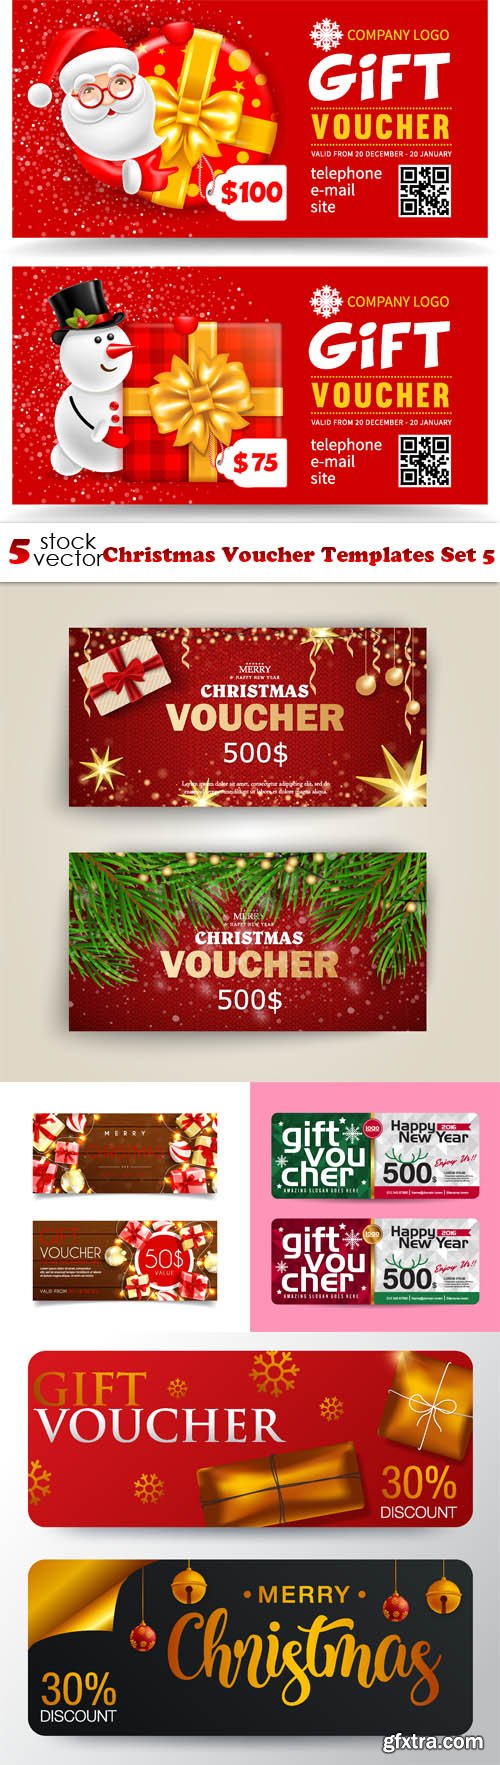 Vectors - Christmas Voucher Templates Set 5